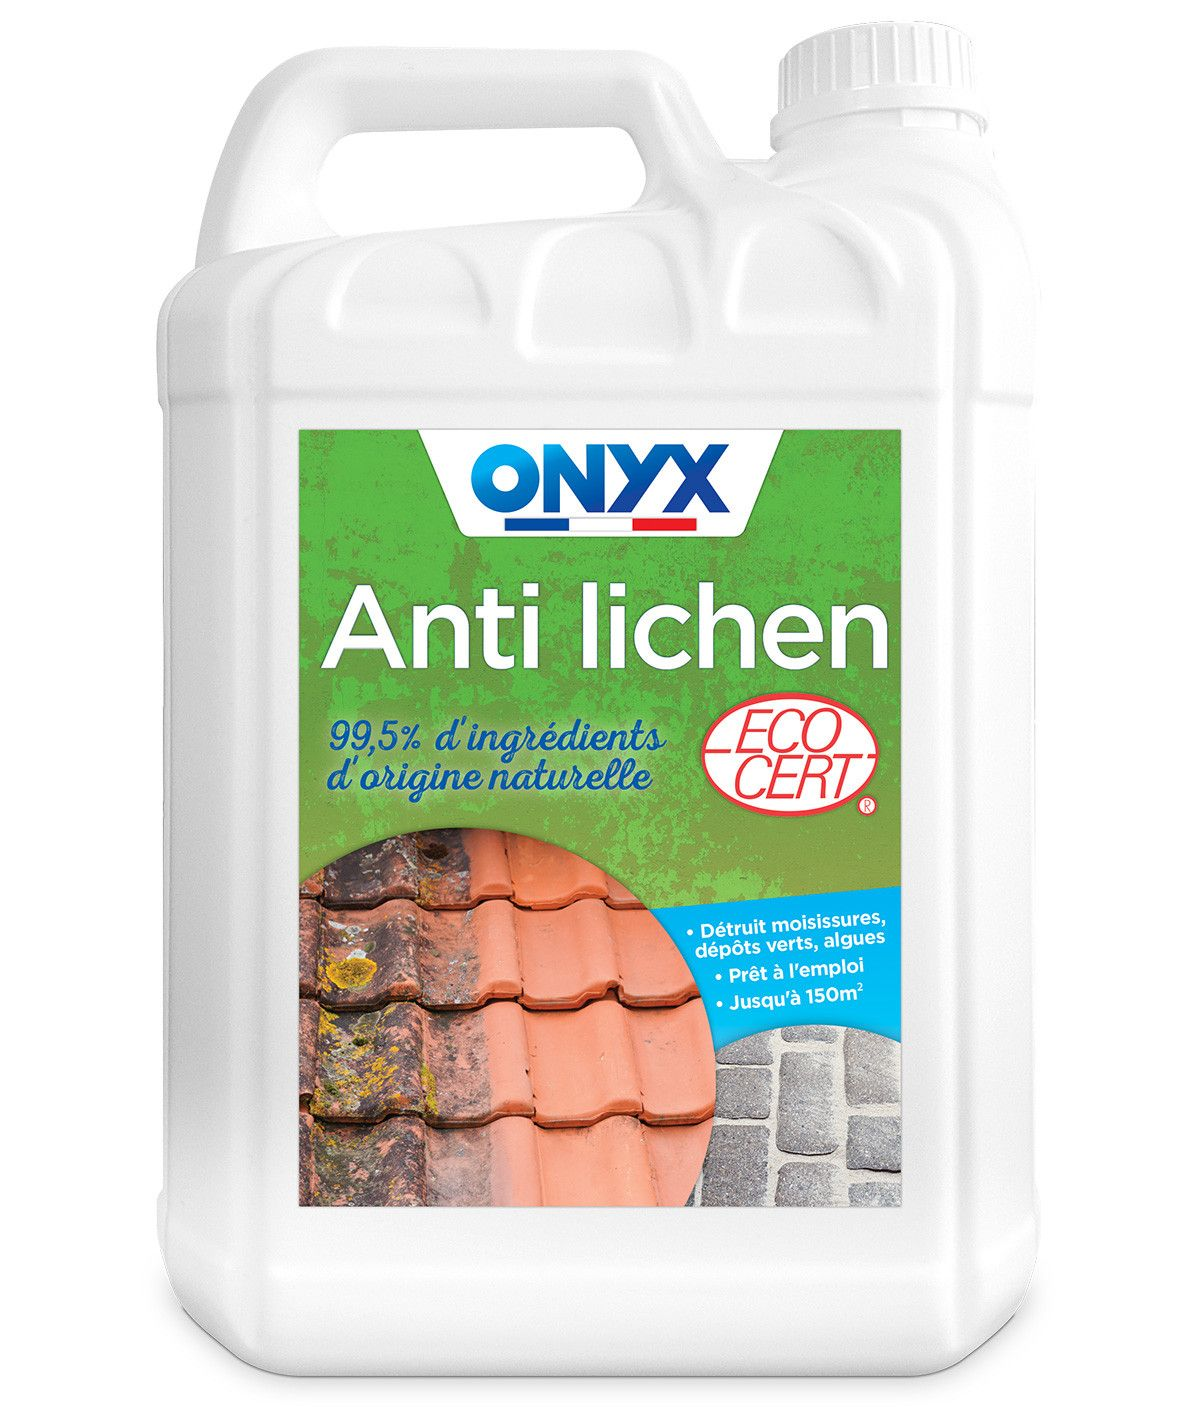 Anti Lichen, distrugge muffe, licheni e alghe, contenitore da 5 L